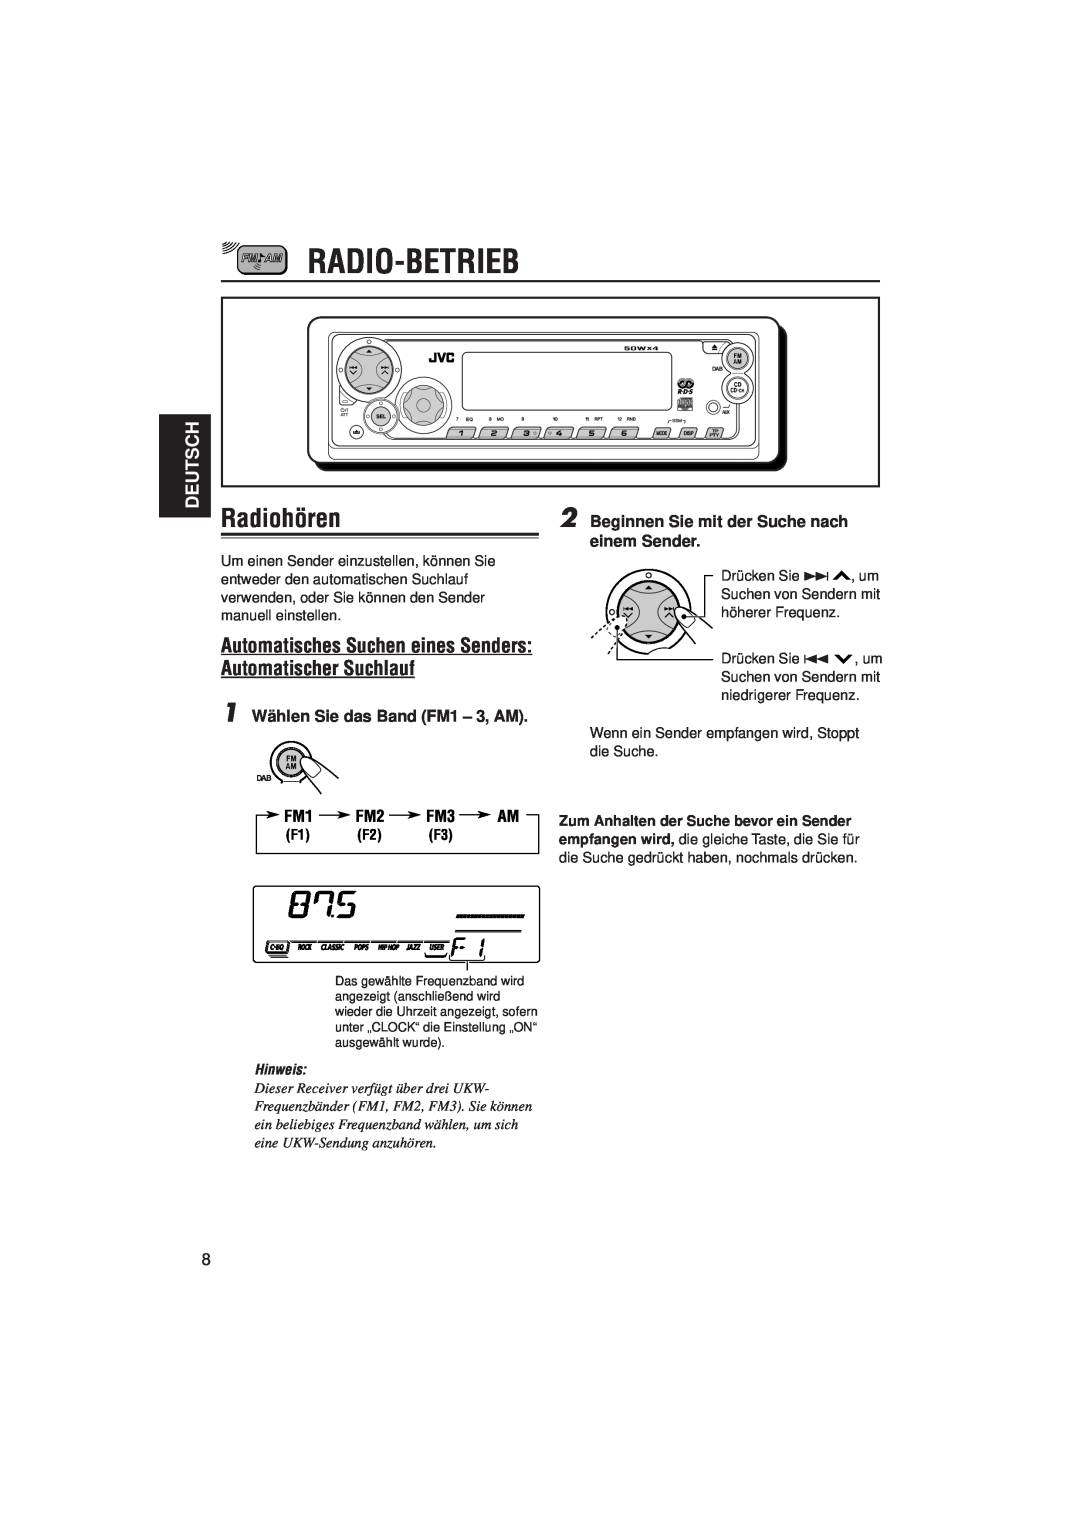 JVC KD-SX921R Radio-Betrieb, Radiohören, Deutsch, 1 Wählen Sie das Band FM1 – 3, AM FM1 FM2 FM3 AM, F1 F2 F3, Hinweis 